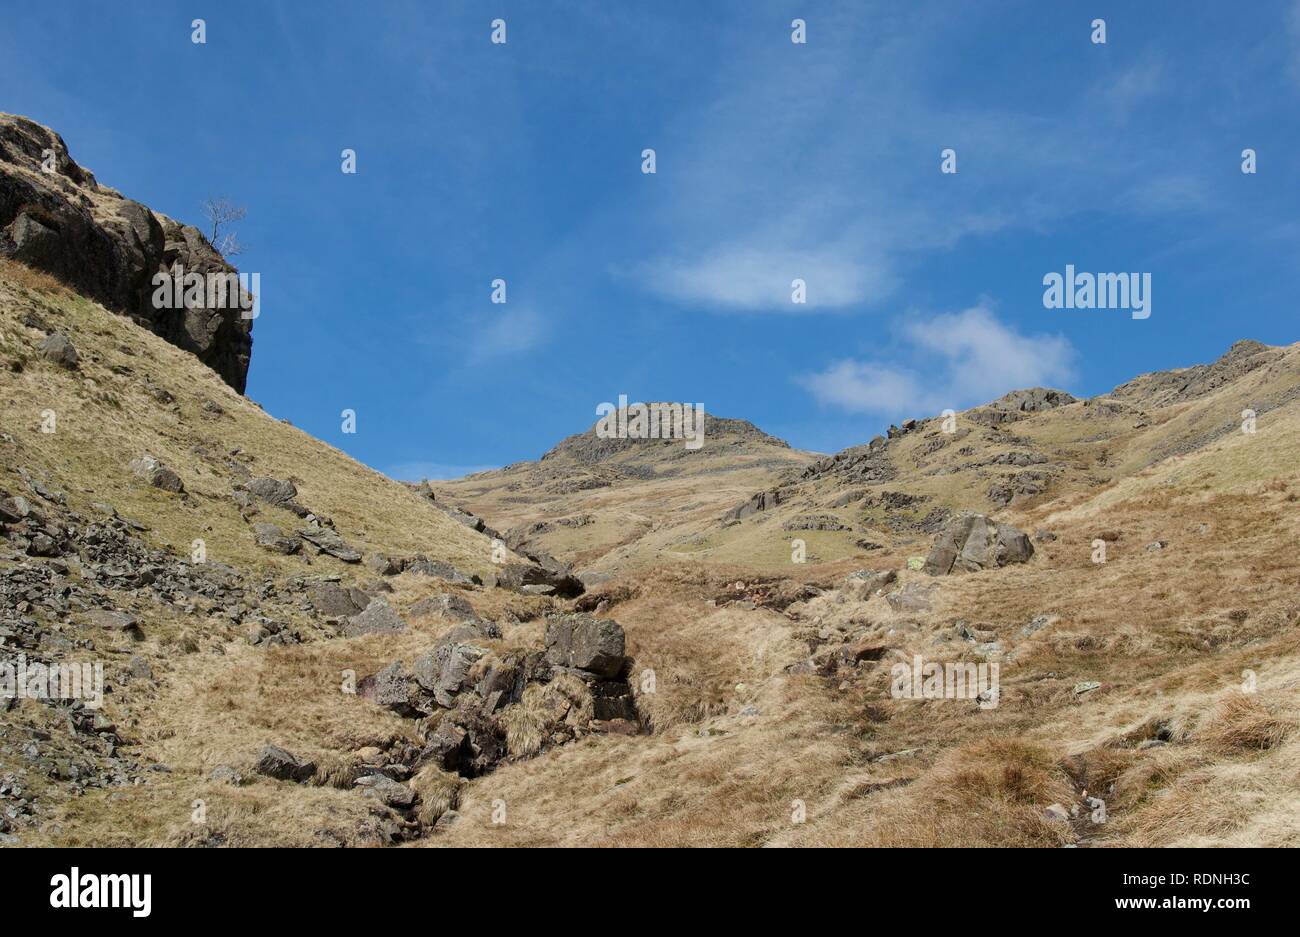 Breite Tal zwischen Felsen: Mountain Stream (Beck) zwischen Felsen und grünen Heide. Blauer Himmel mit weißen Wolken, Felsen und einige Berggipfel. Foo Stockfoto